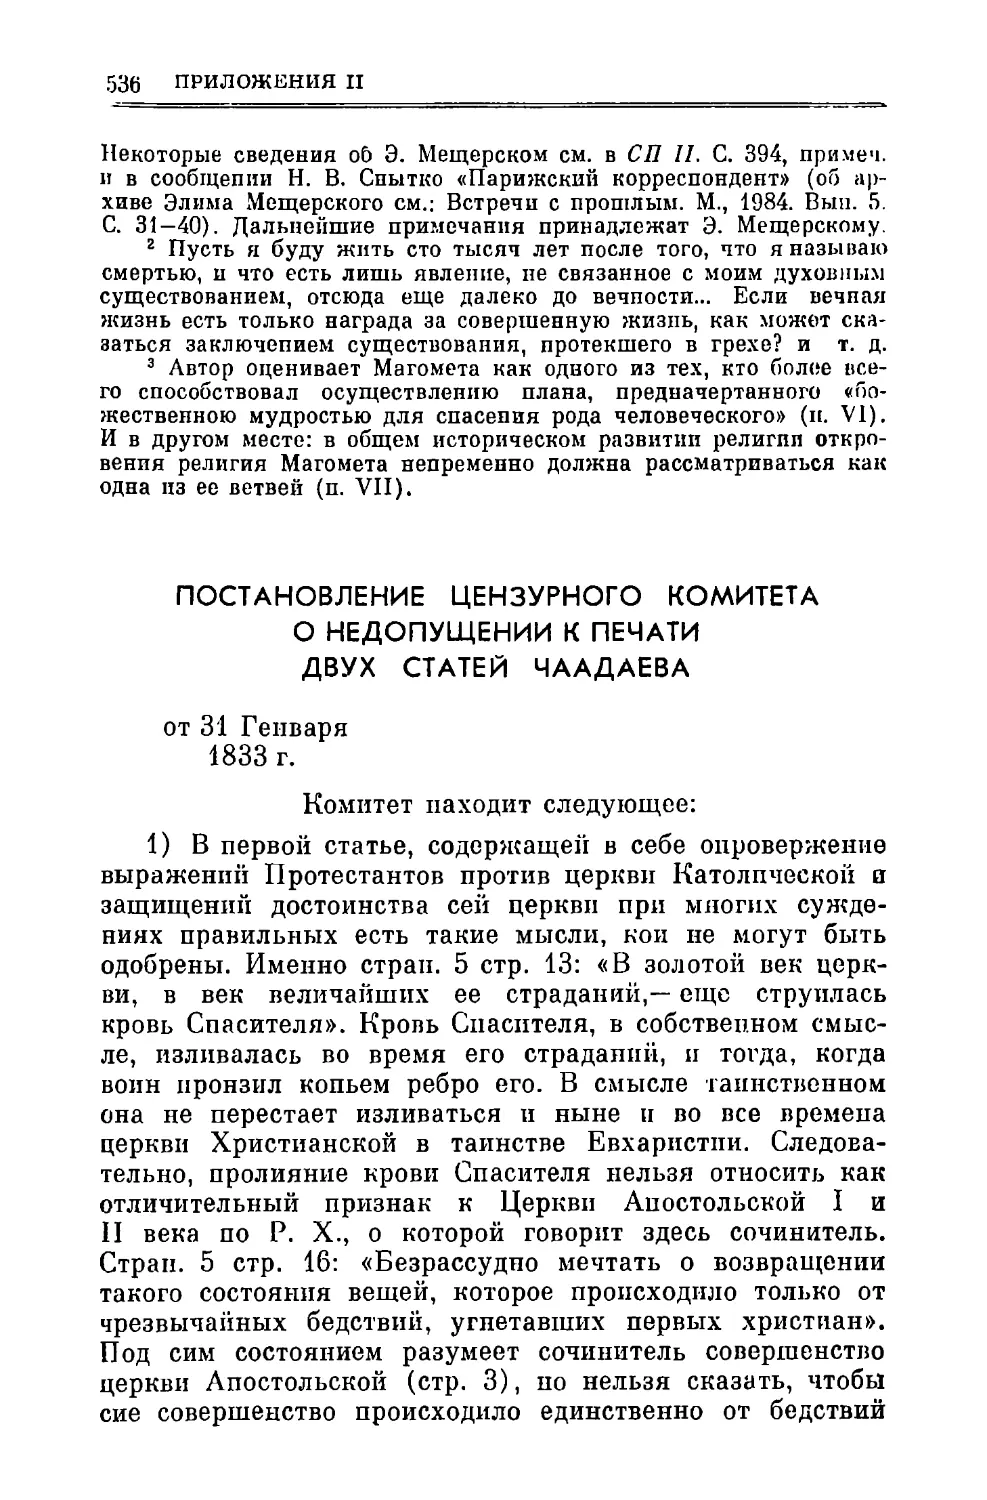 Постановление Цензурного комитета о недопущении к печати двух статей Чаадаева 31.І.1833